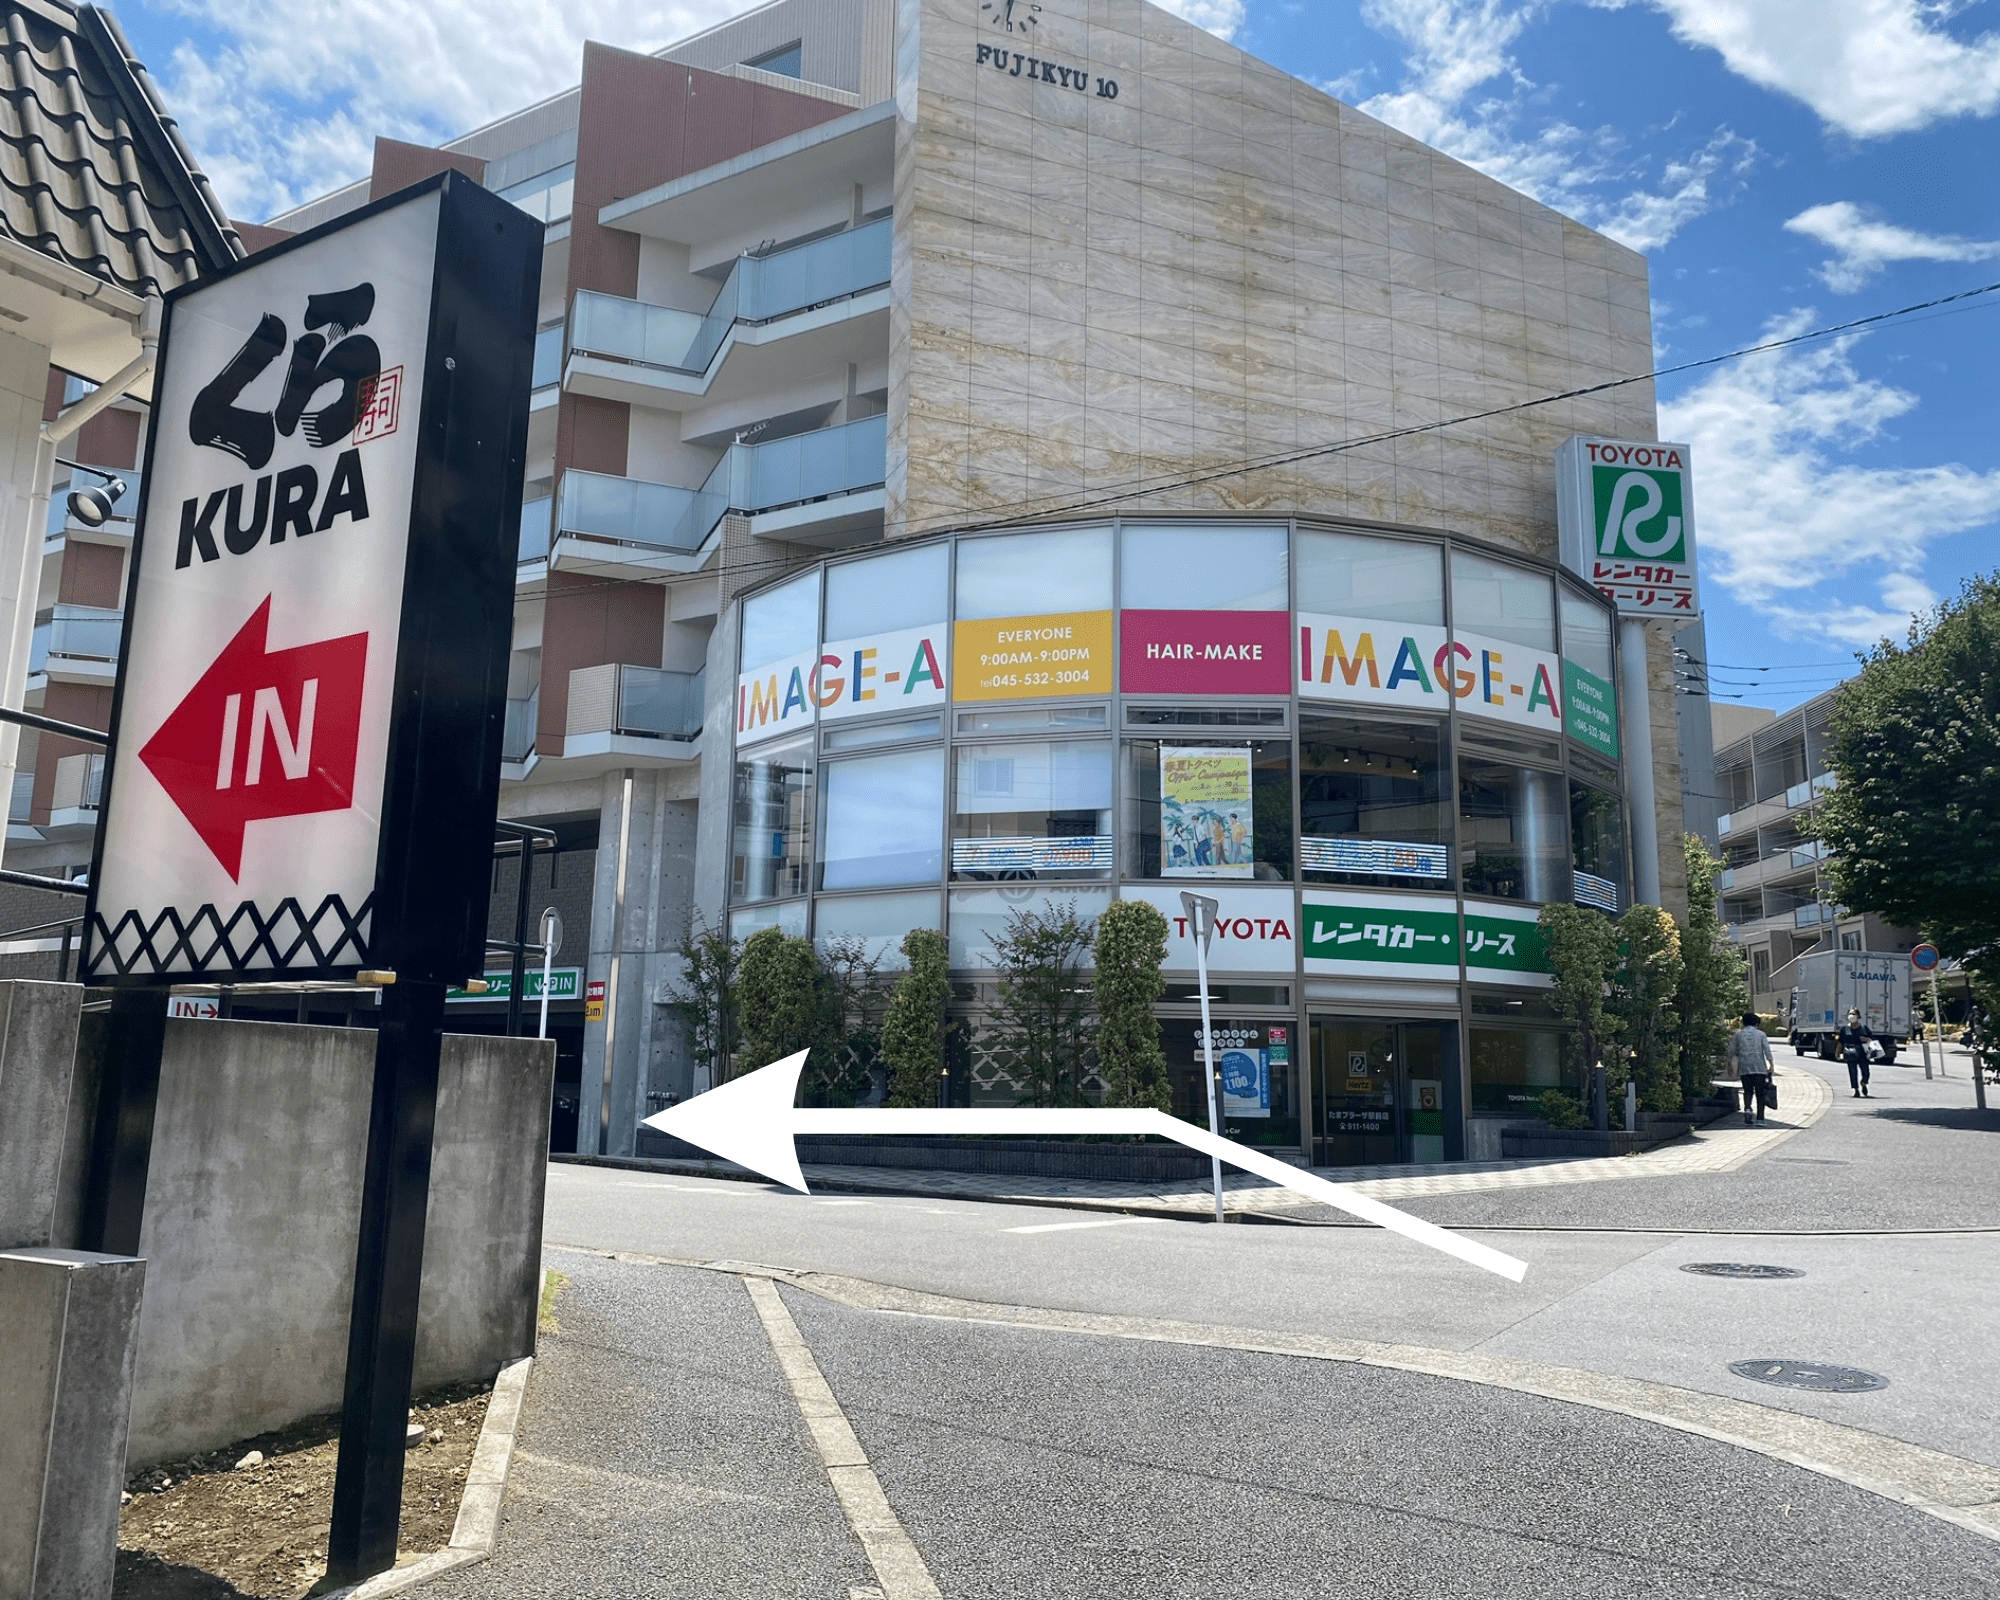 ５. くら寿司と１Fにトヨタレンタカーリースのお店が入ったビルの間の道を左に曲がります。